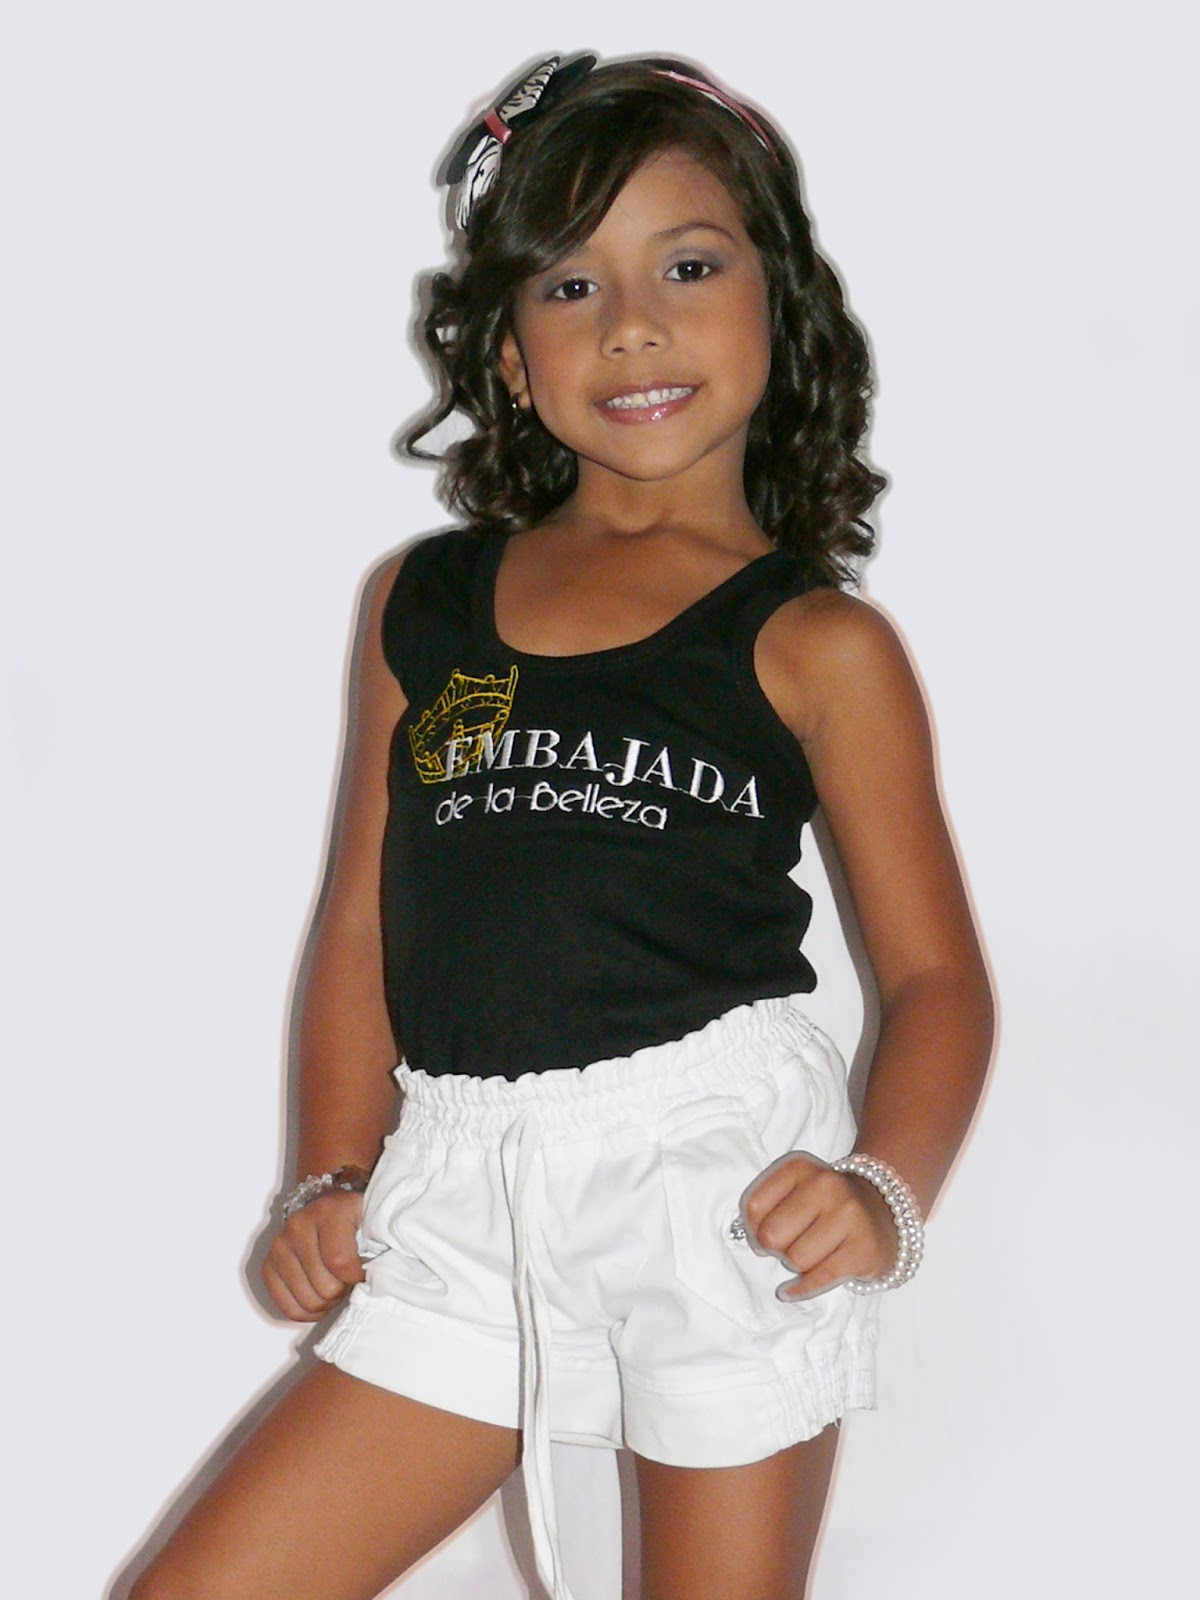 Top models list. Ninas. "Ninas-012". Мода детская Венесуэла. Топ мини моделс участницы.